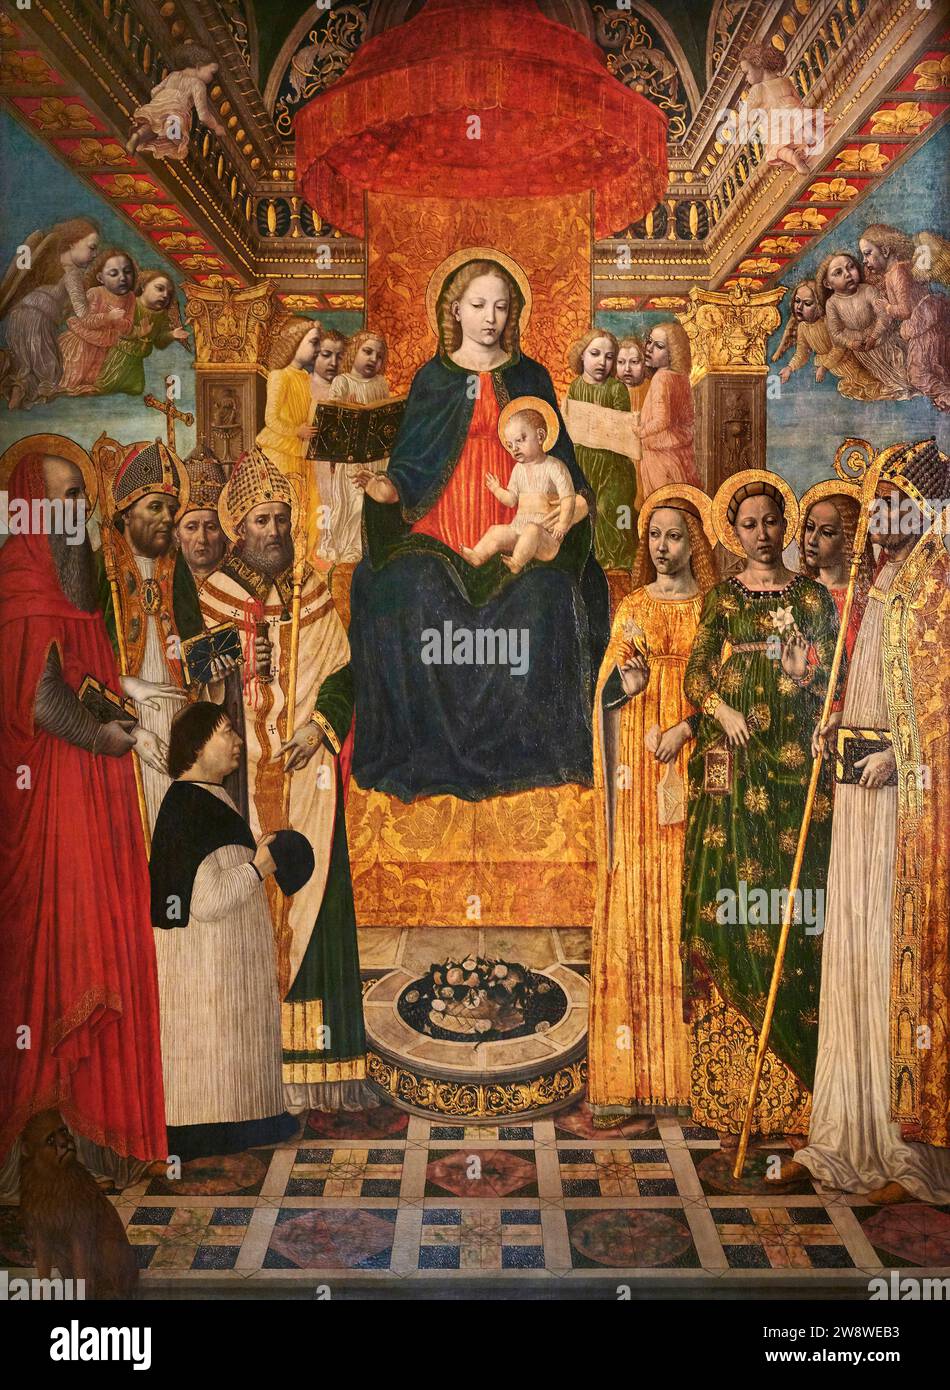 Sacra conversazione  - tempera e olio  su tavola - Ambrogio da Fossano detto Bergognone  - 1485 - Milano, Pinacoteca Ambrosiana Stock Photo